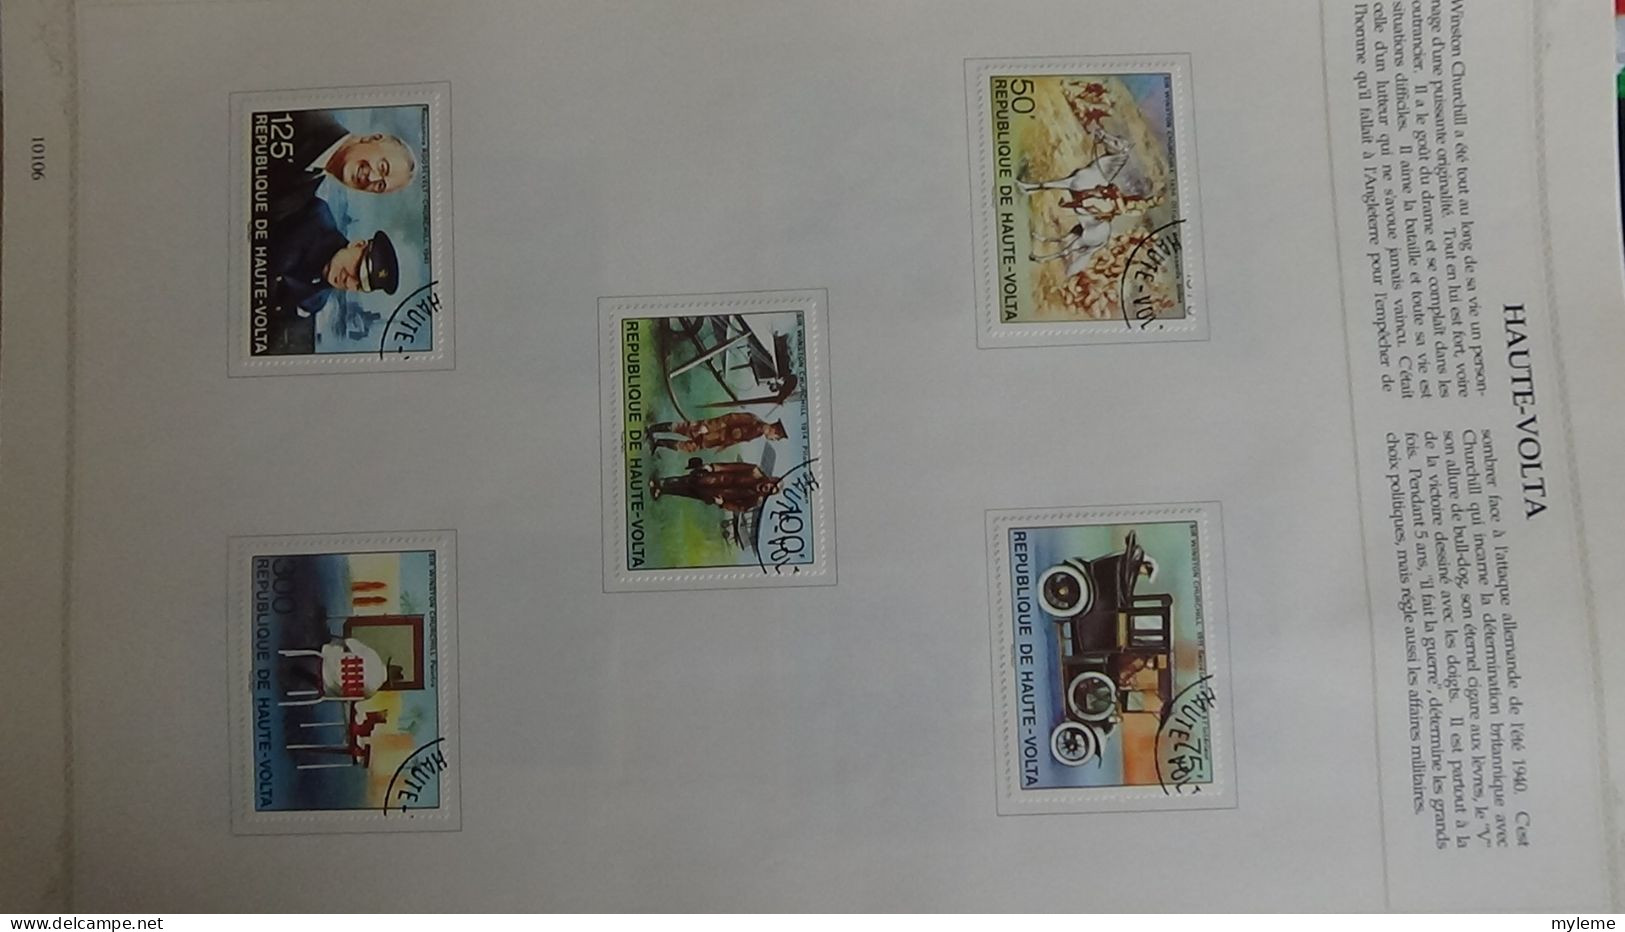 BF3 Classeur de timbres et blocs oblitérés d'Afrique. (toutes les photos n'ont pas été prises)  A saisir !!!.